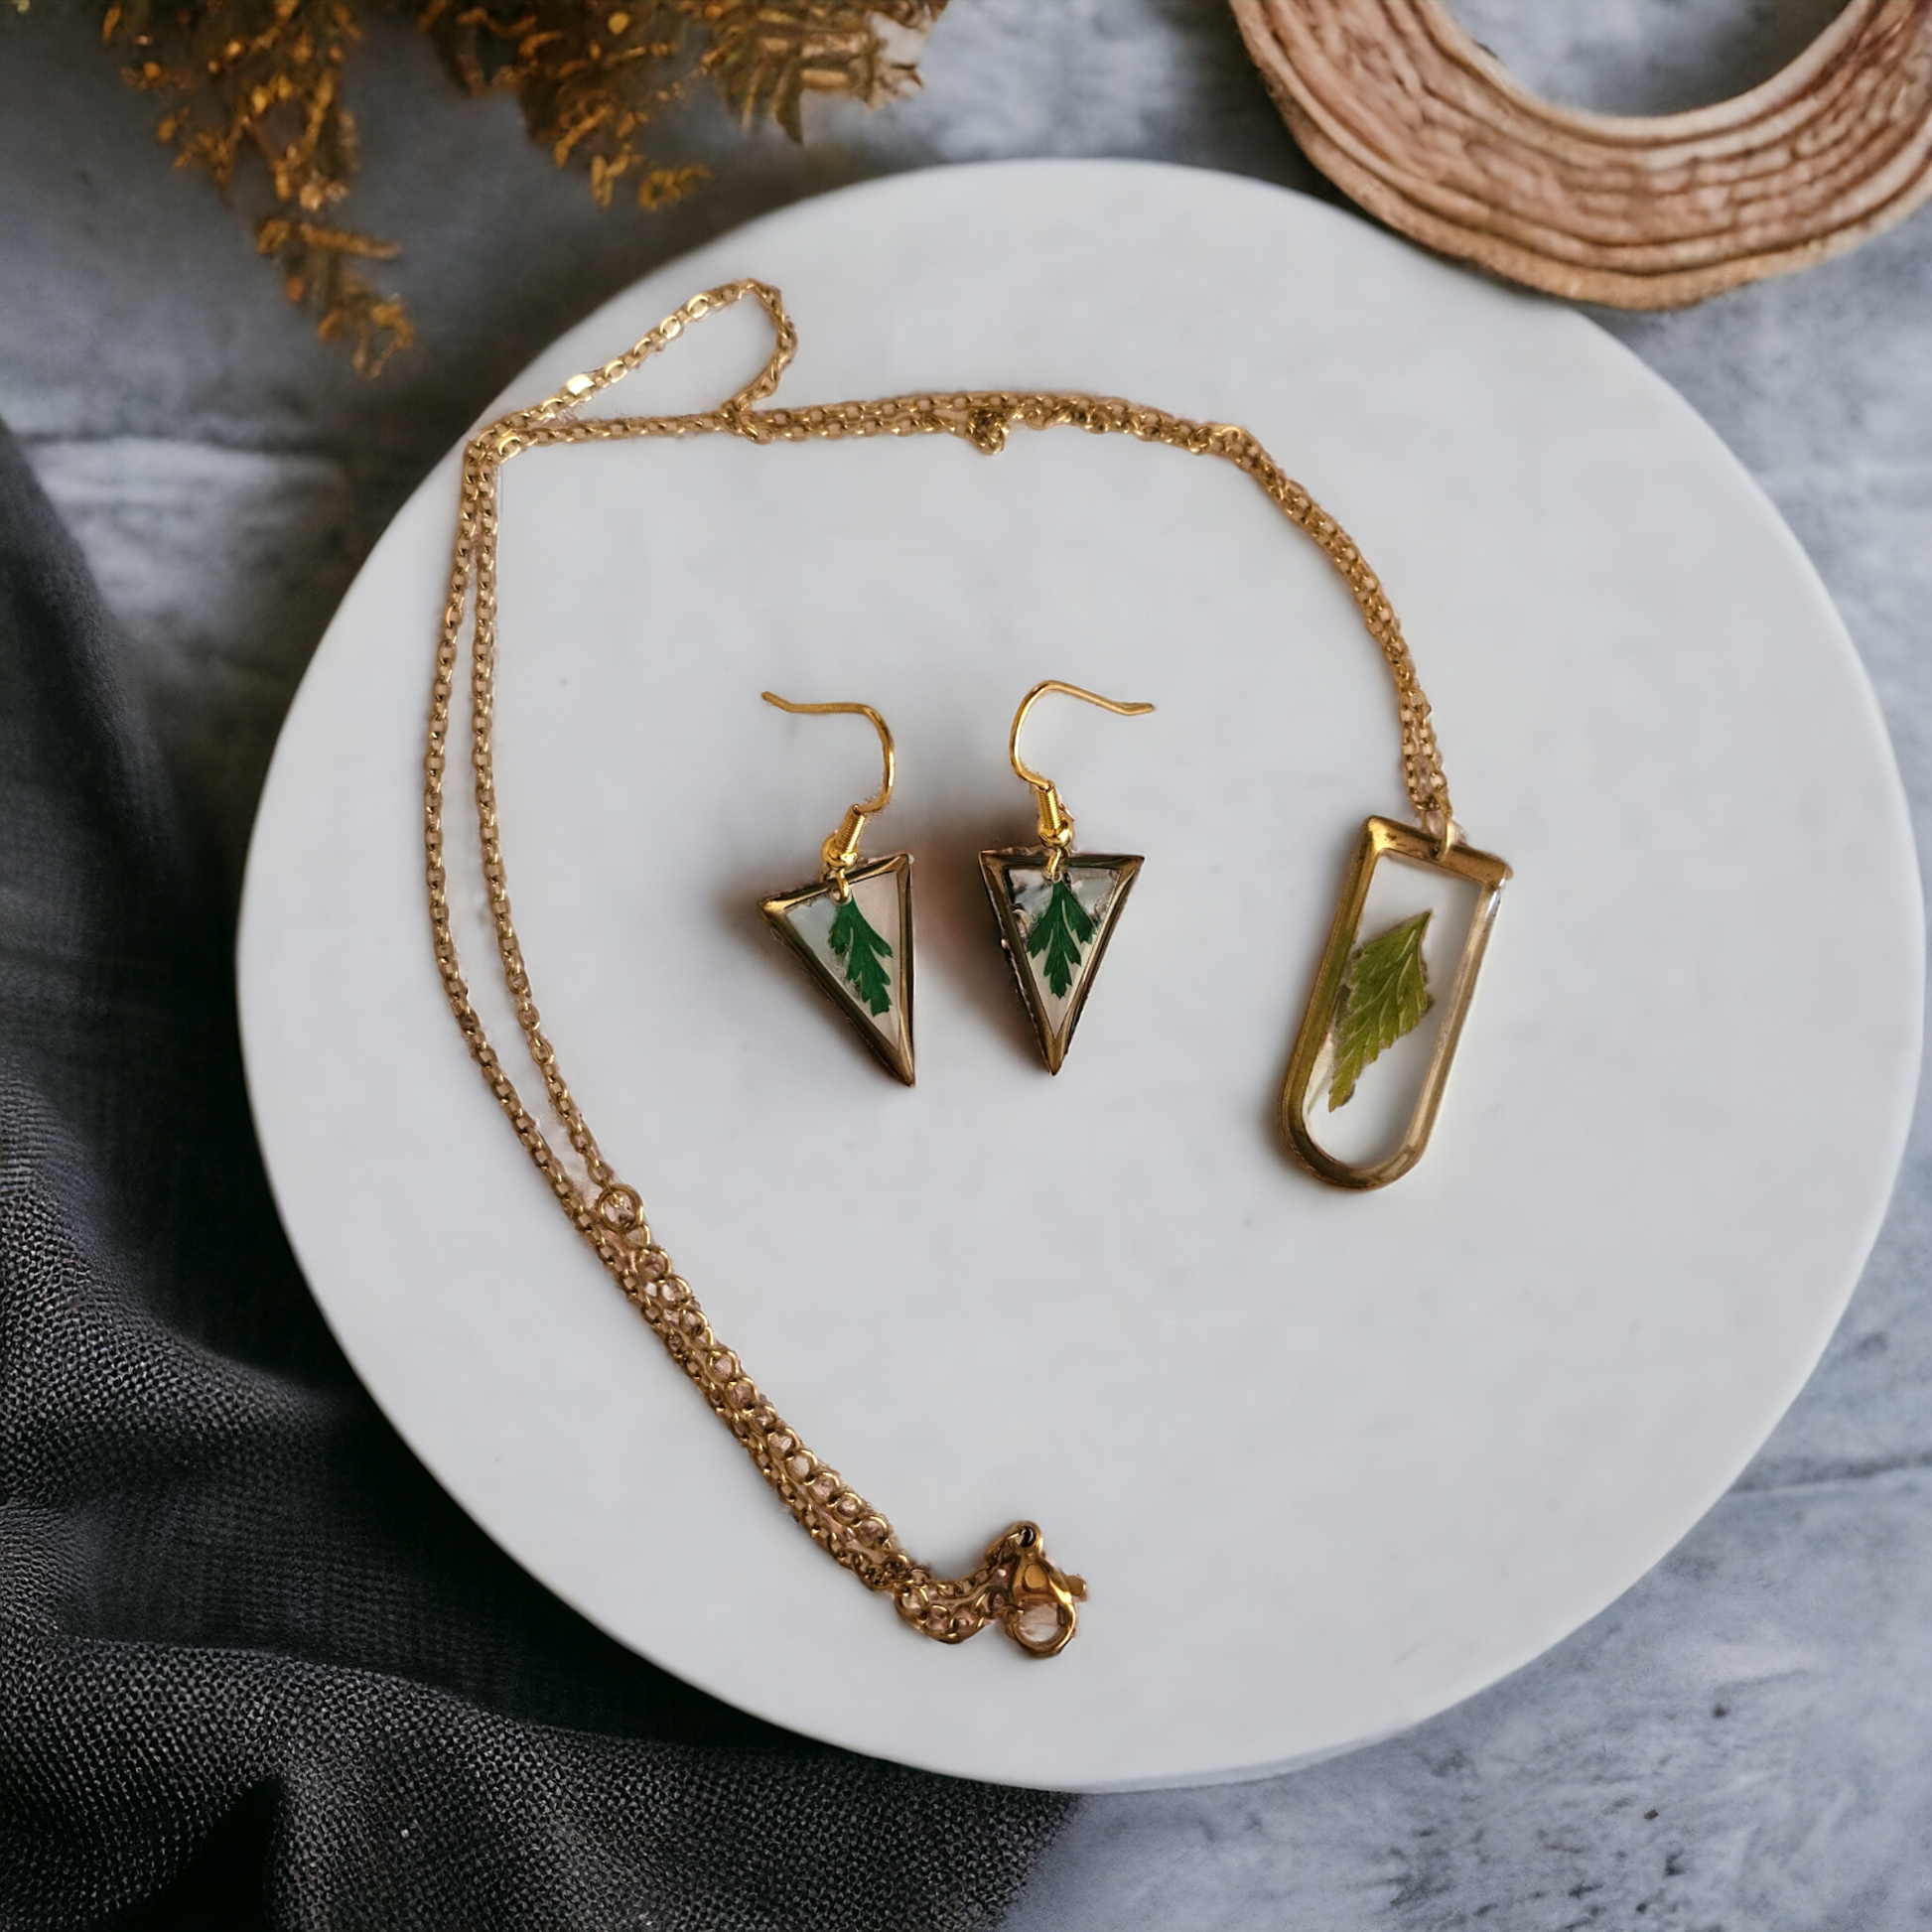 Fern Necklace earrings set | Real flower jewellery